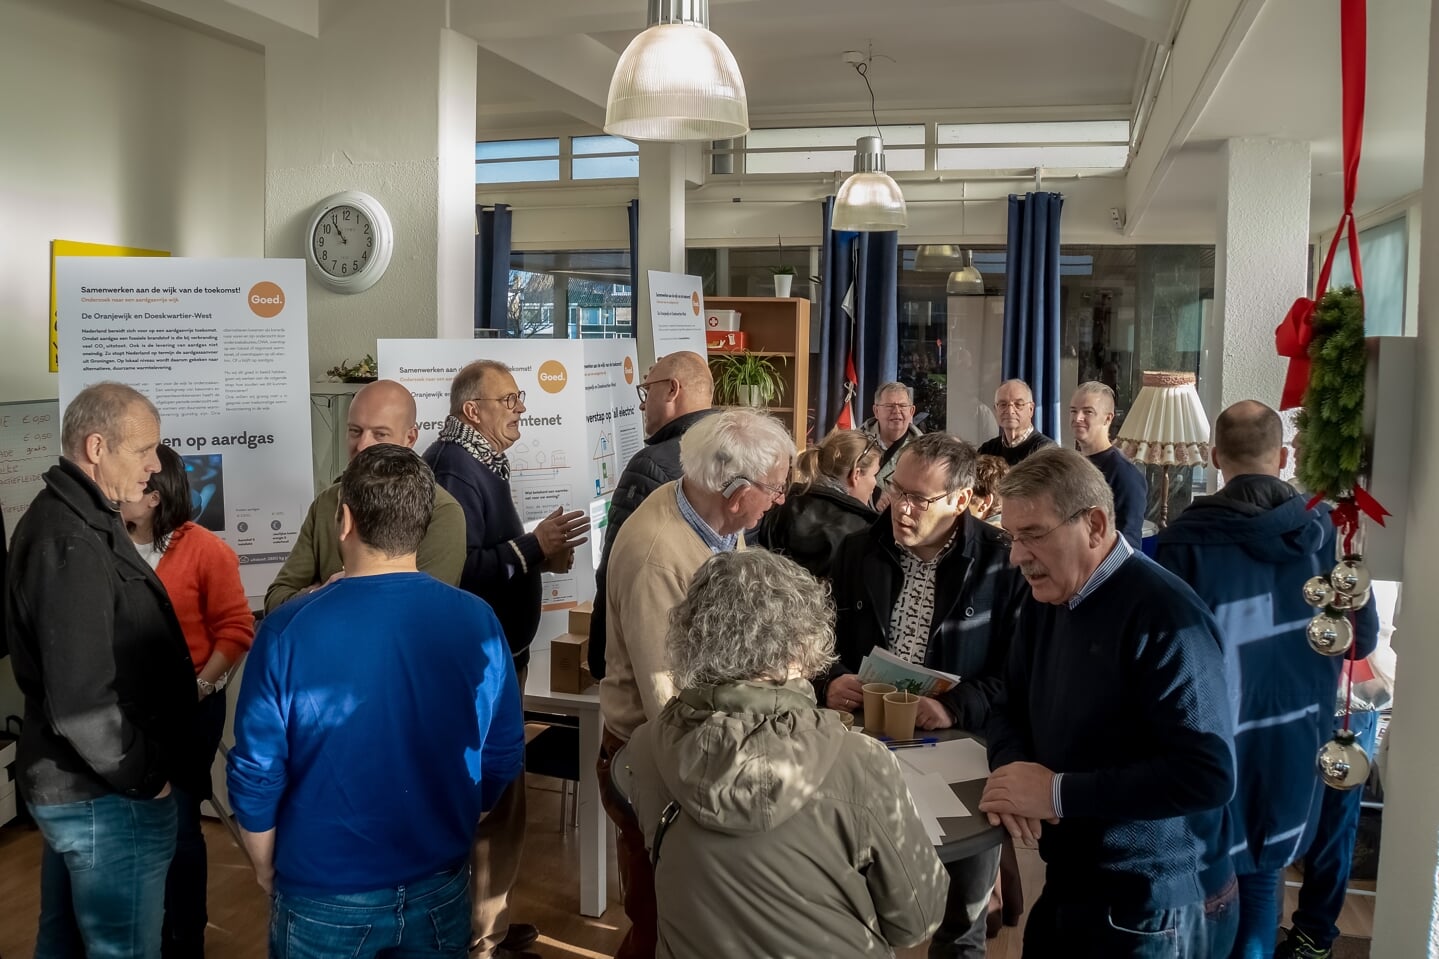 De wijkbijwoners werden bijgepraat tijdens een bijeenkomst in 't Buurthuis half december 2019.